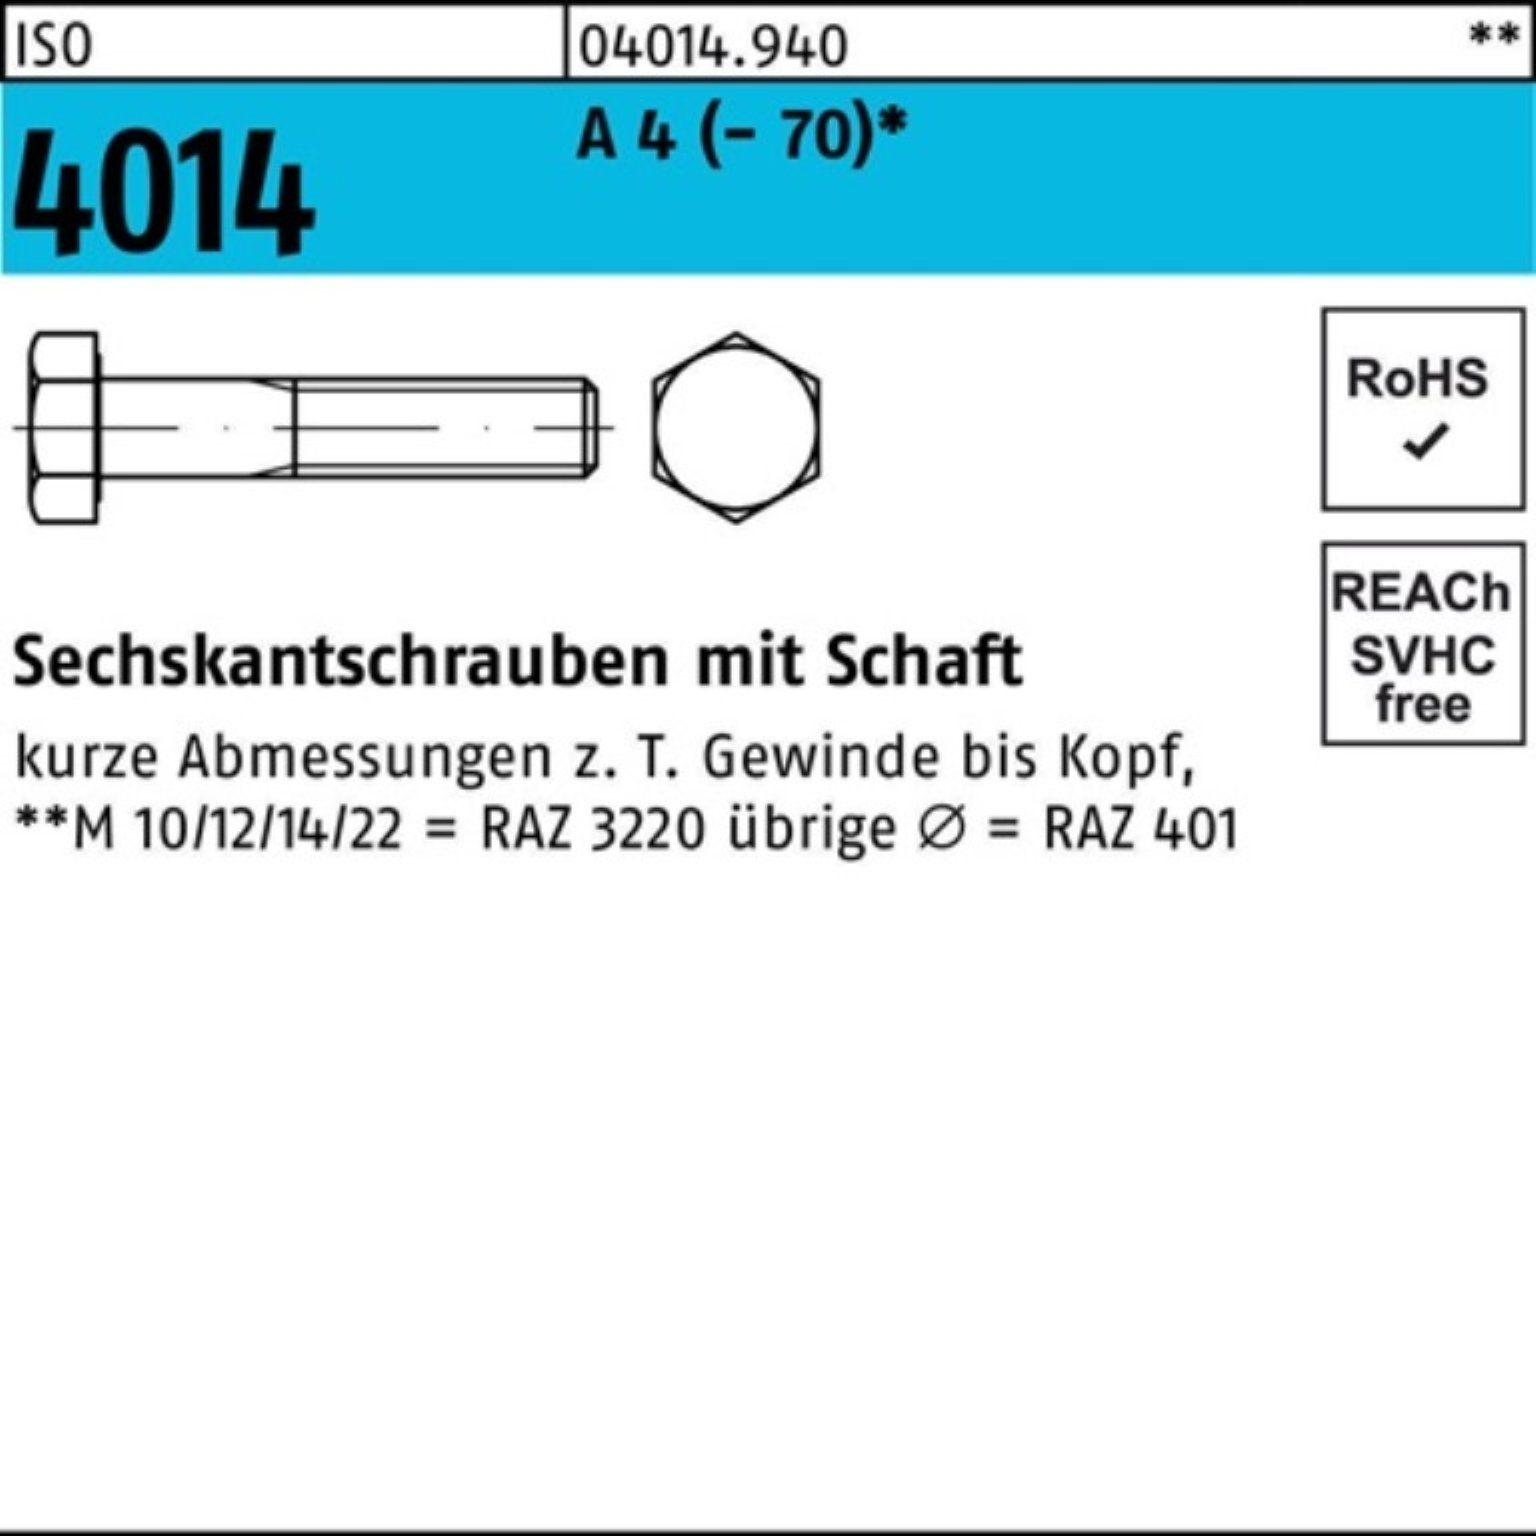 Angebot aussprechen Bufab Sechskantschraube 100er Pack Sechskantschraube ISO 100 A 4 M6x (70) 4014 Schaft 90 St